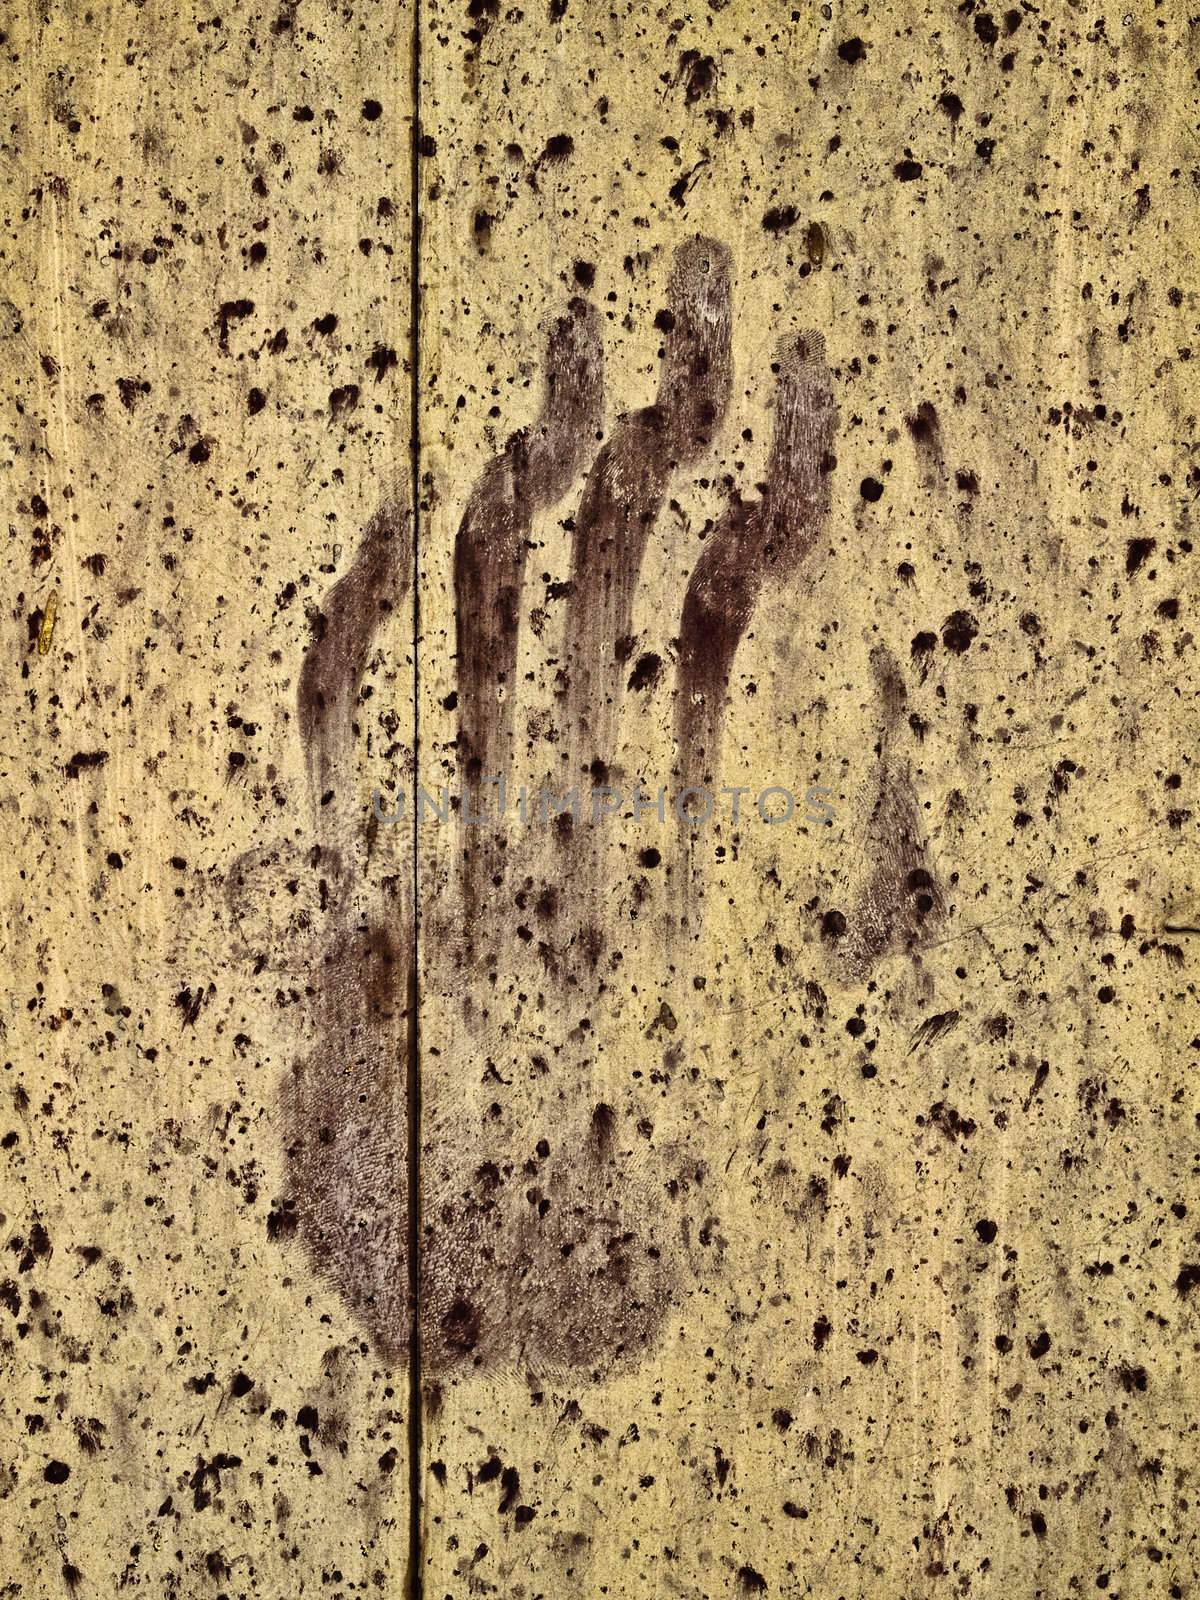 Eerie and spooky handprint on an old chapel door